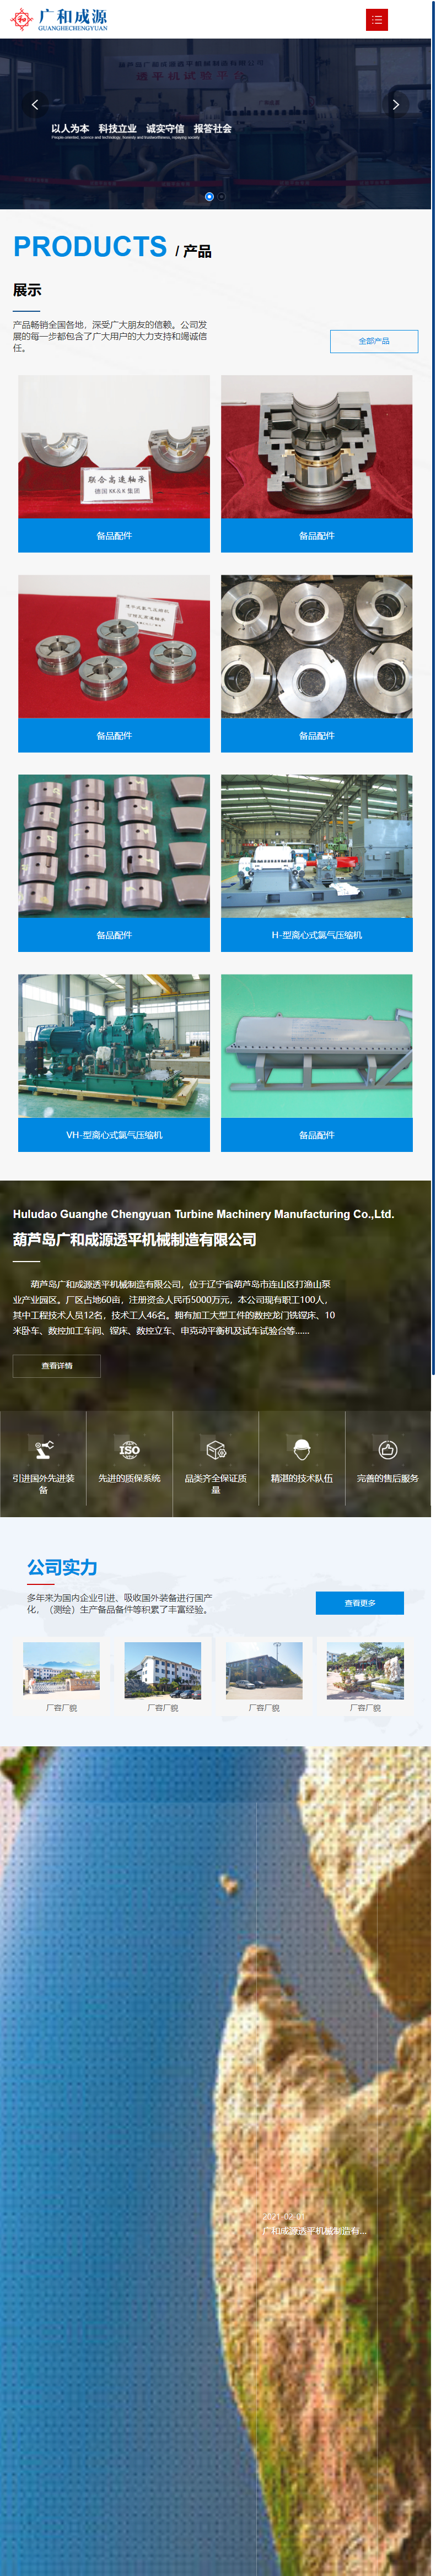 葫芦岛广和成源透平机械制造有限公司网站案例